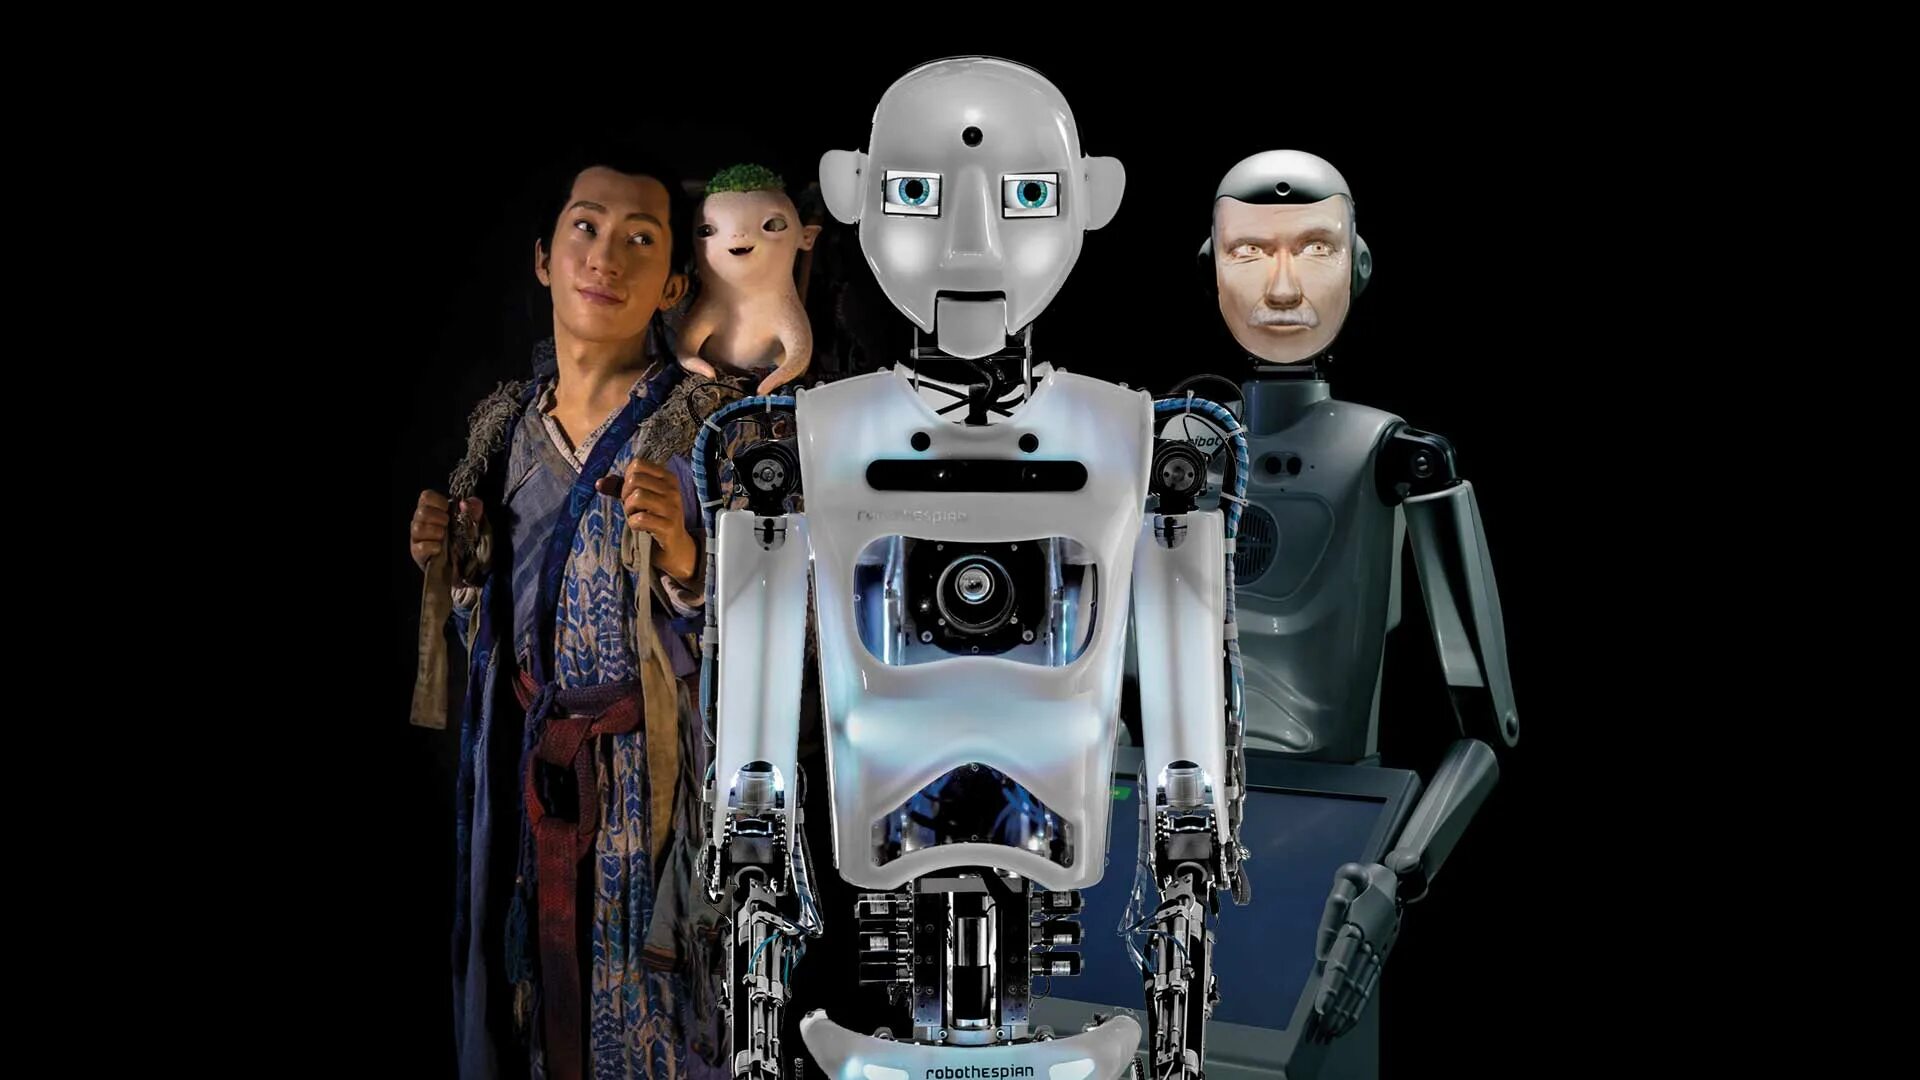 Robots mp3. Робот. Робот ROBOTHESPIAN. Робот гуманоид. Роботы будущего.